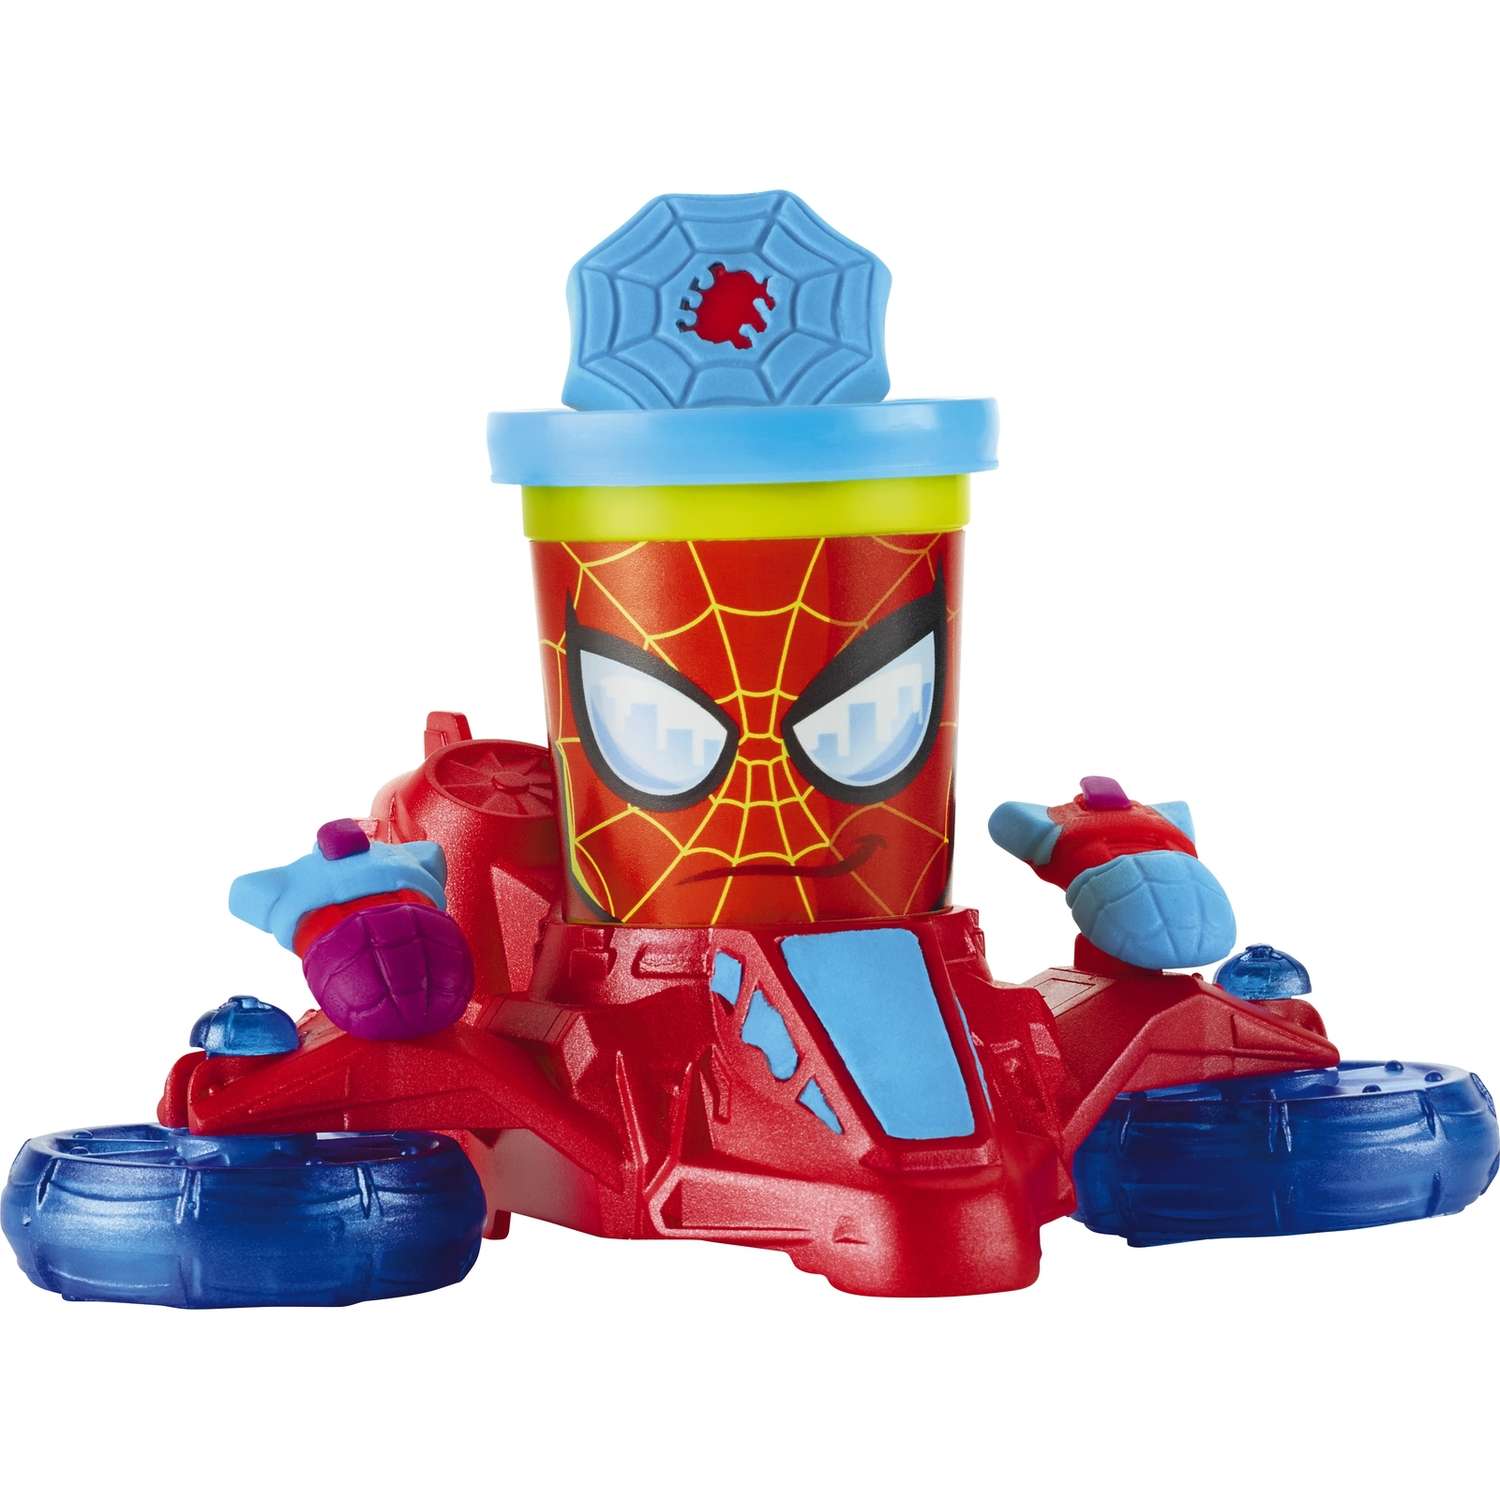 Транспортные средства Play-Doh героев Мстителей в ассортименте - фото 5